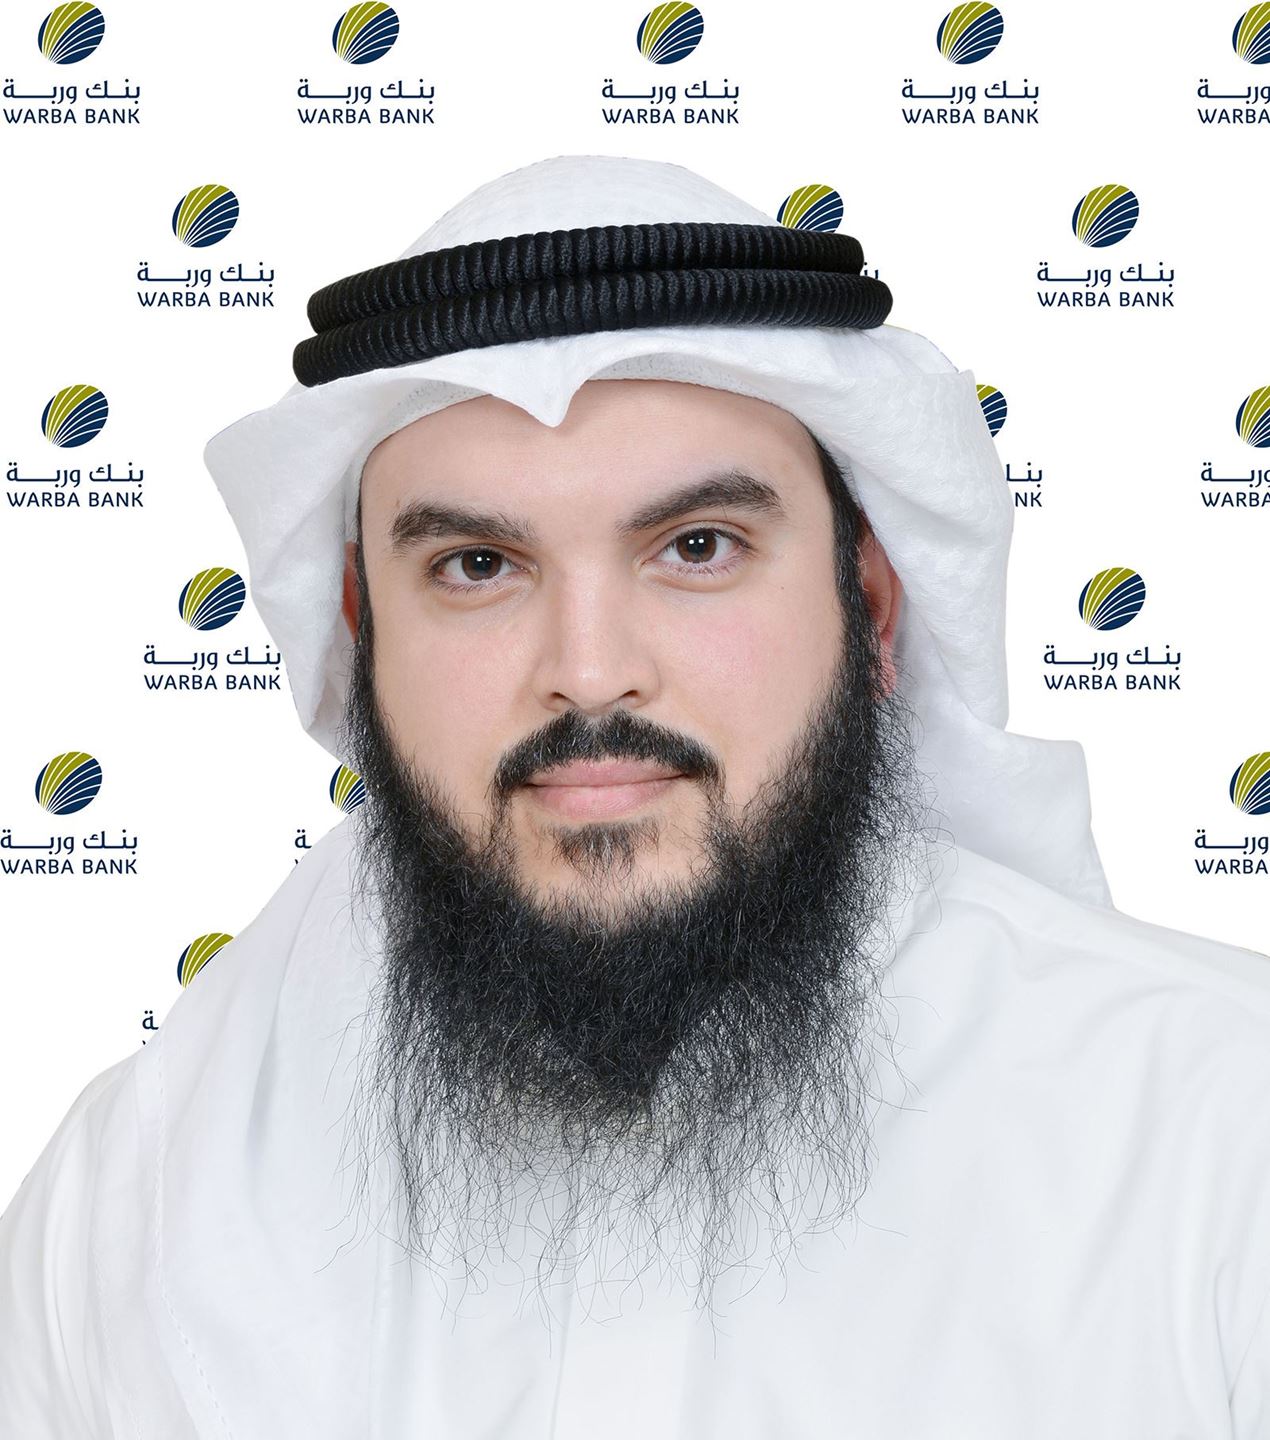 السيد ثويني خالد الثويني، نائب رئيس المجموعة المصرفية للاستثمار في بنك وربة